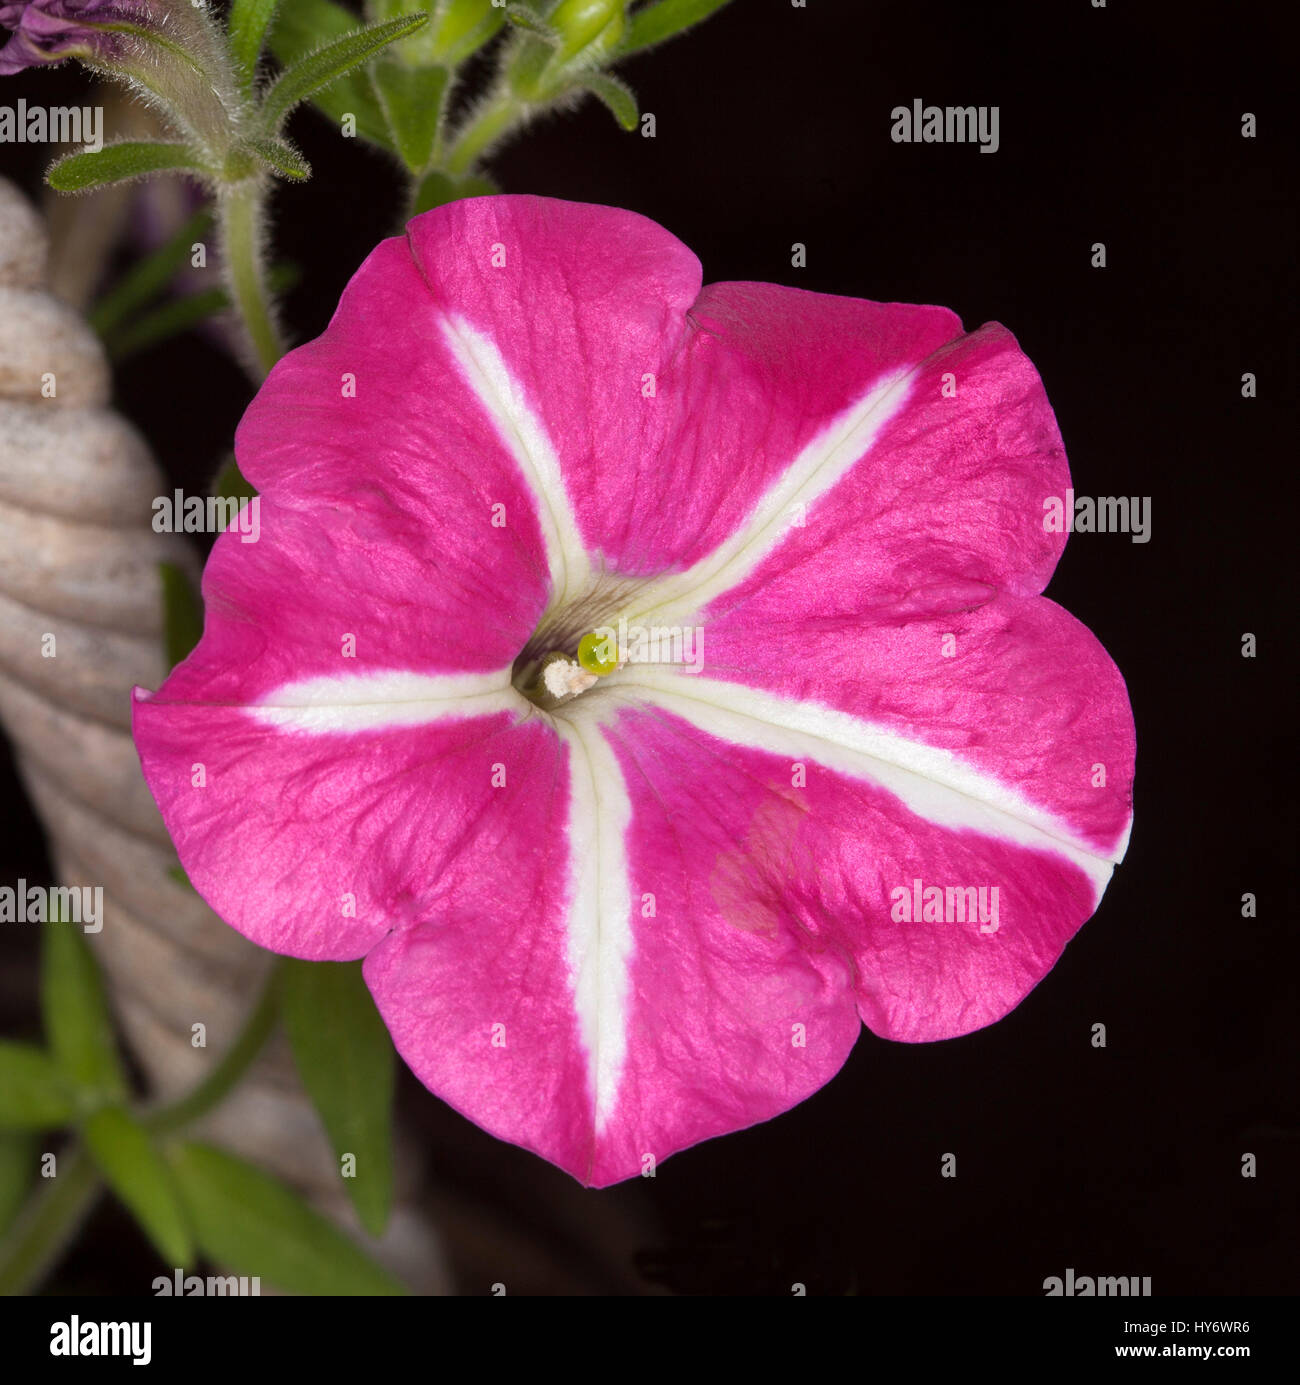 Insolito vivid fiore rosa di petunia con strisce bianche su petali, annuale fioritura delle piante su sfondo nero Foto Stock